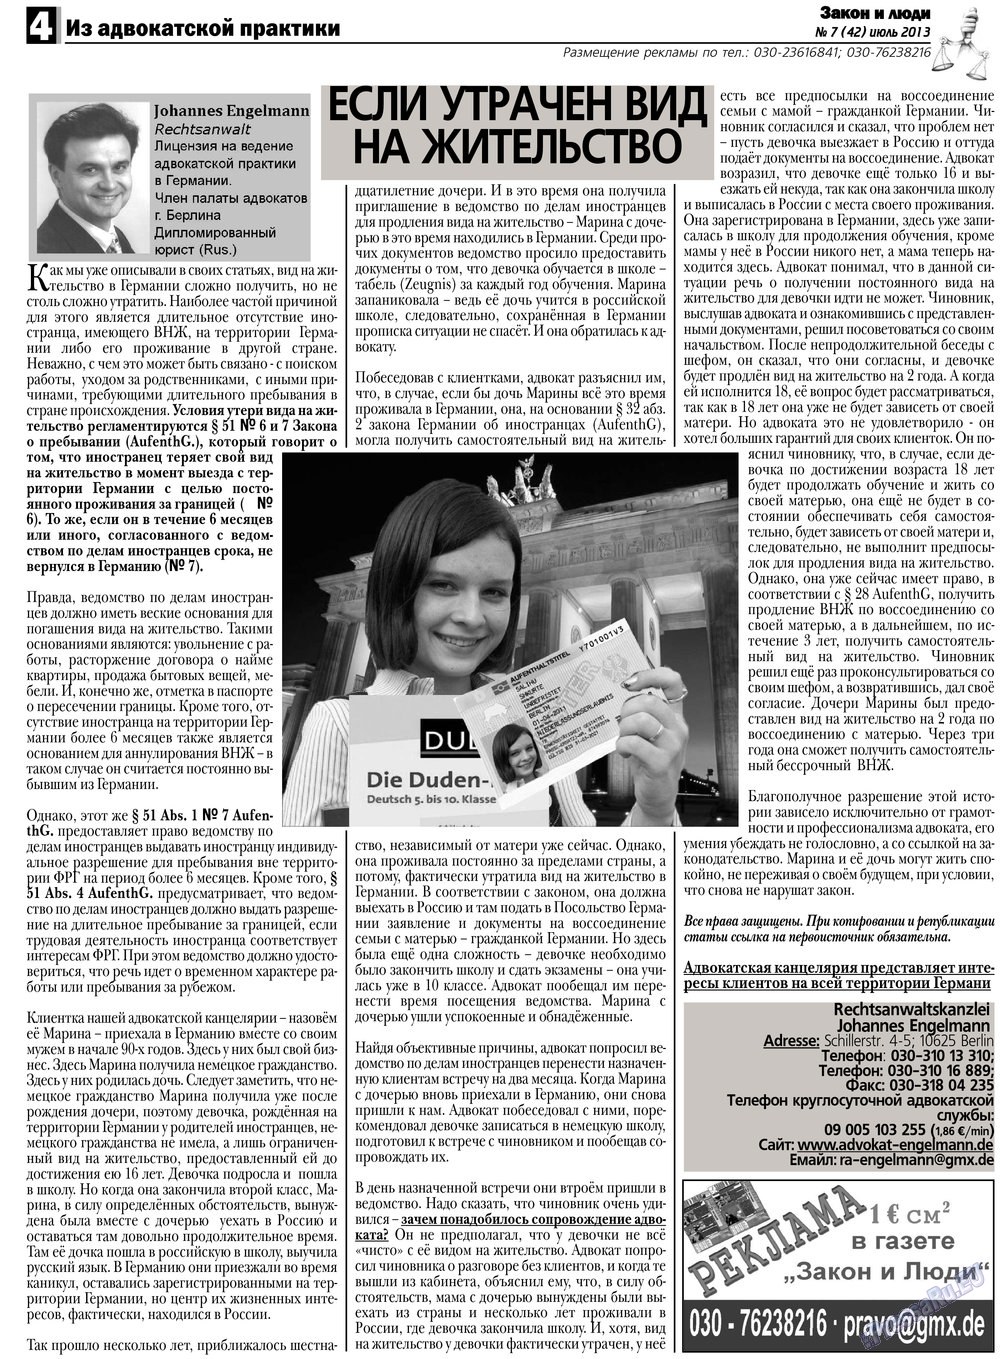 Закон и люди, газета. 2013 №7 стр.4